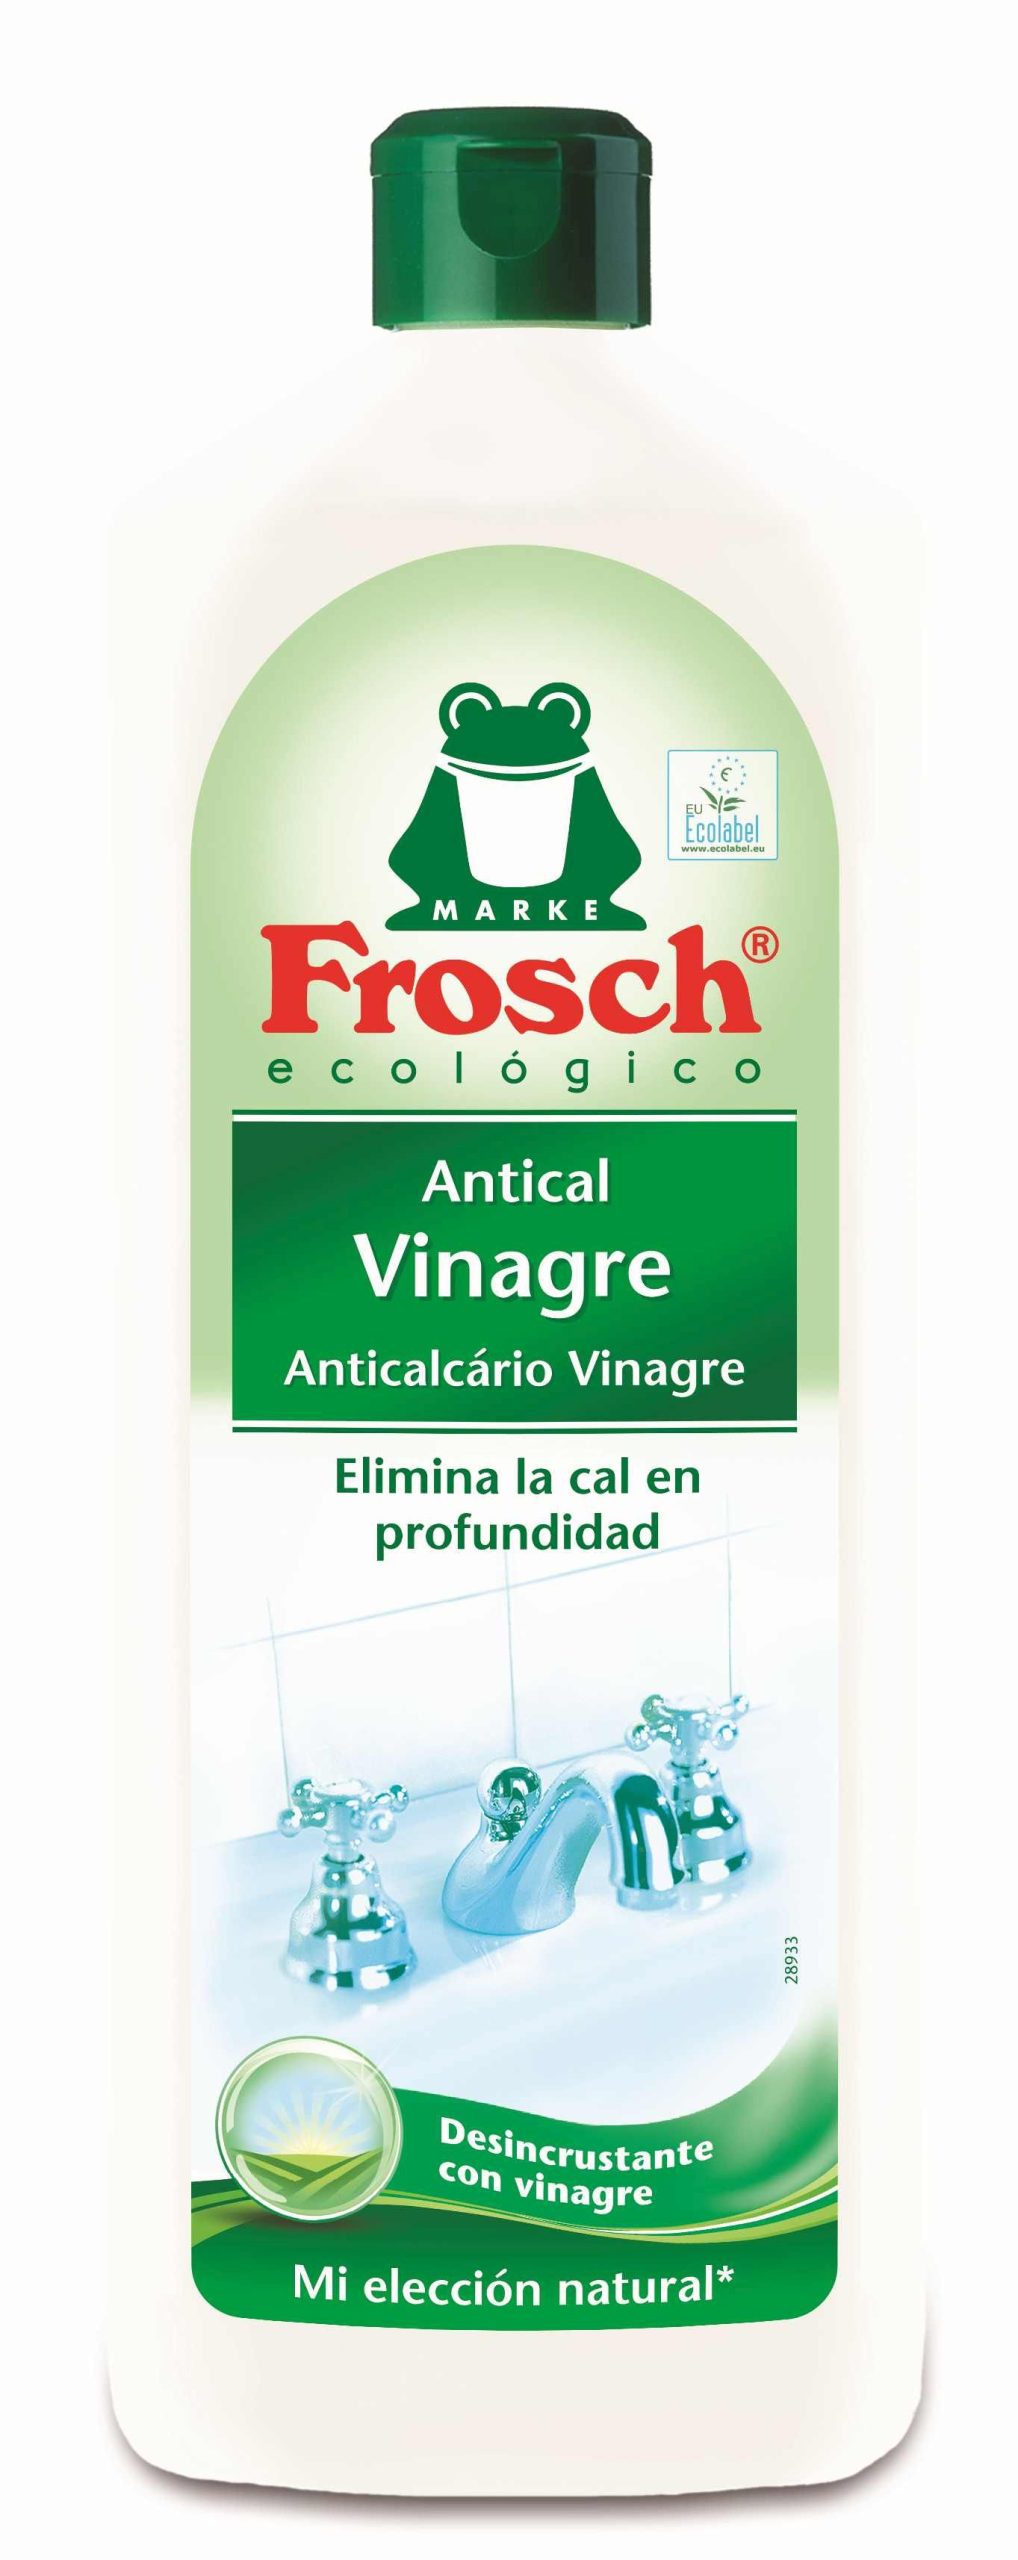 Frosh vinagre antical